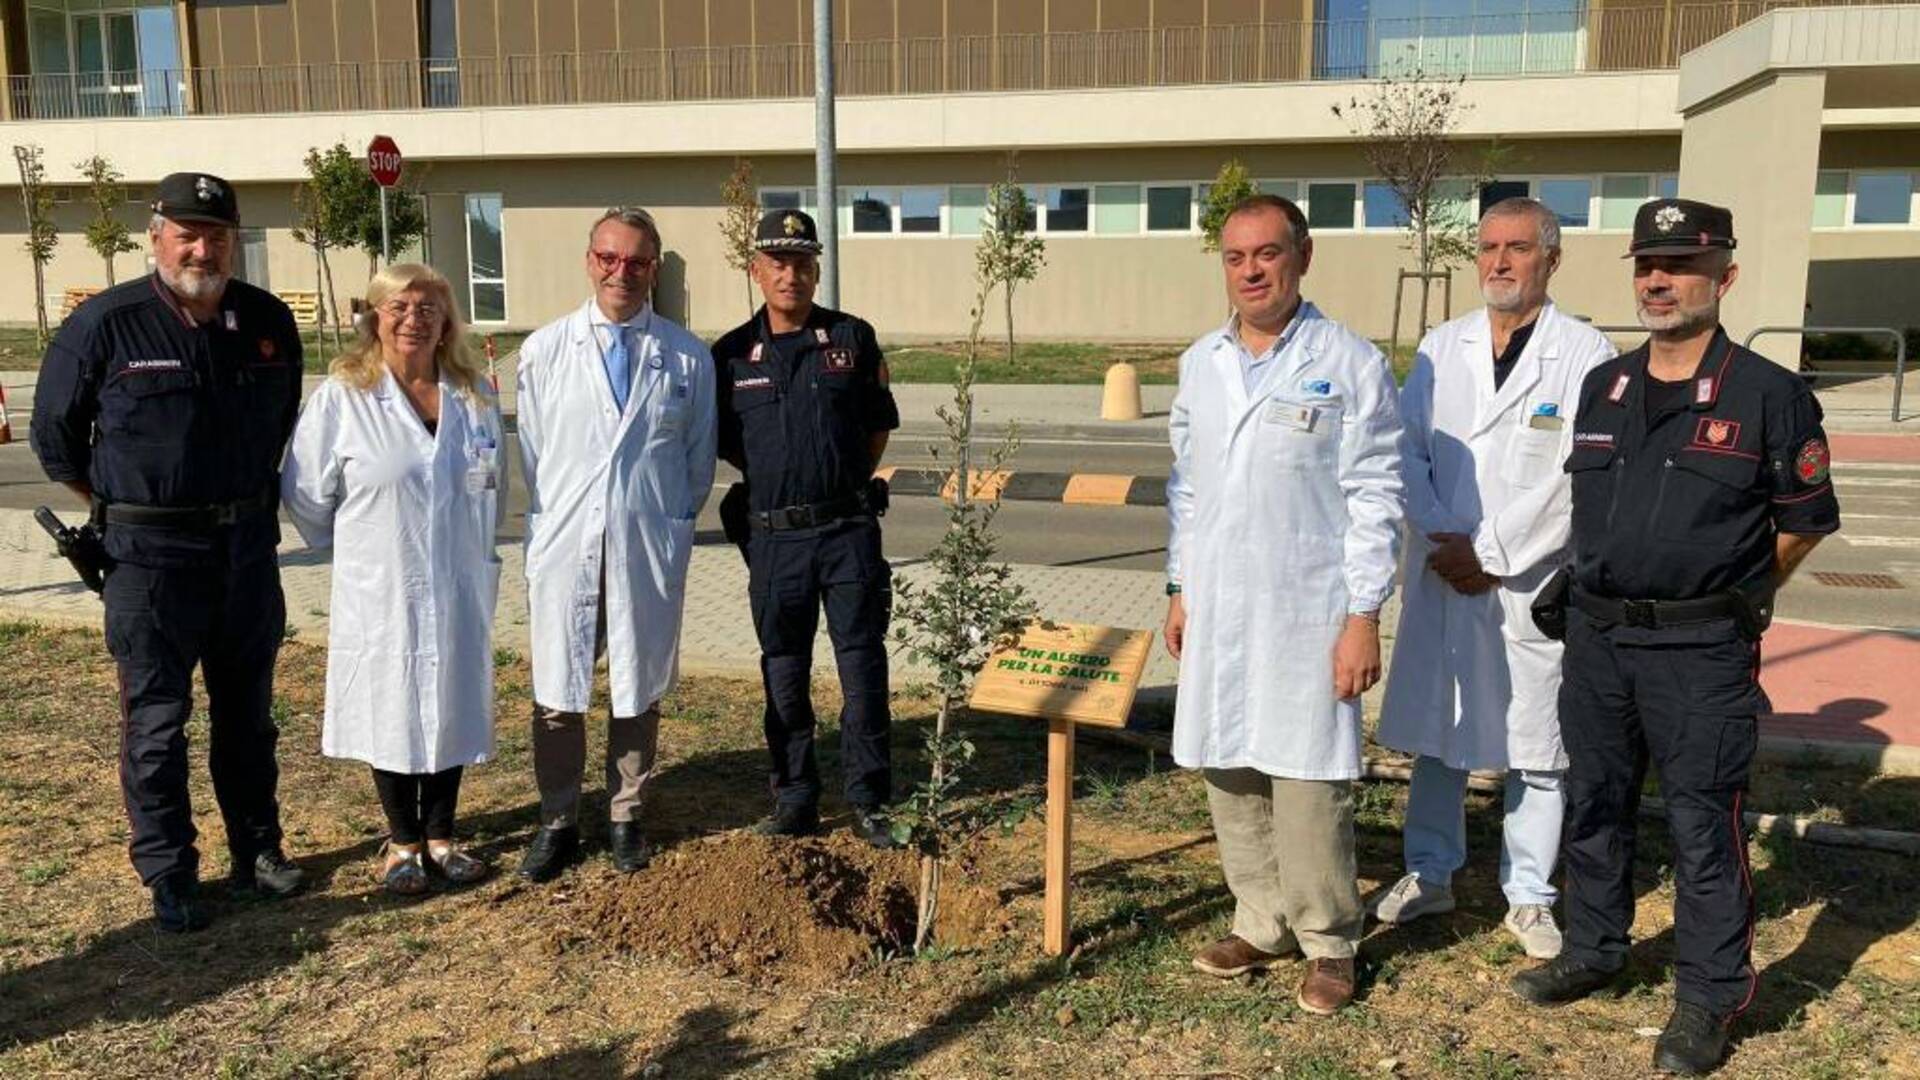 Donato e messo a dimora “Un albero per la vita” all’ospedale Misericordia